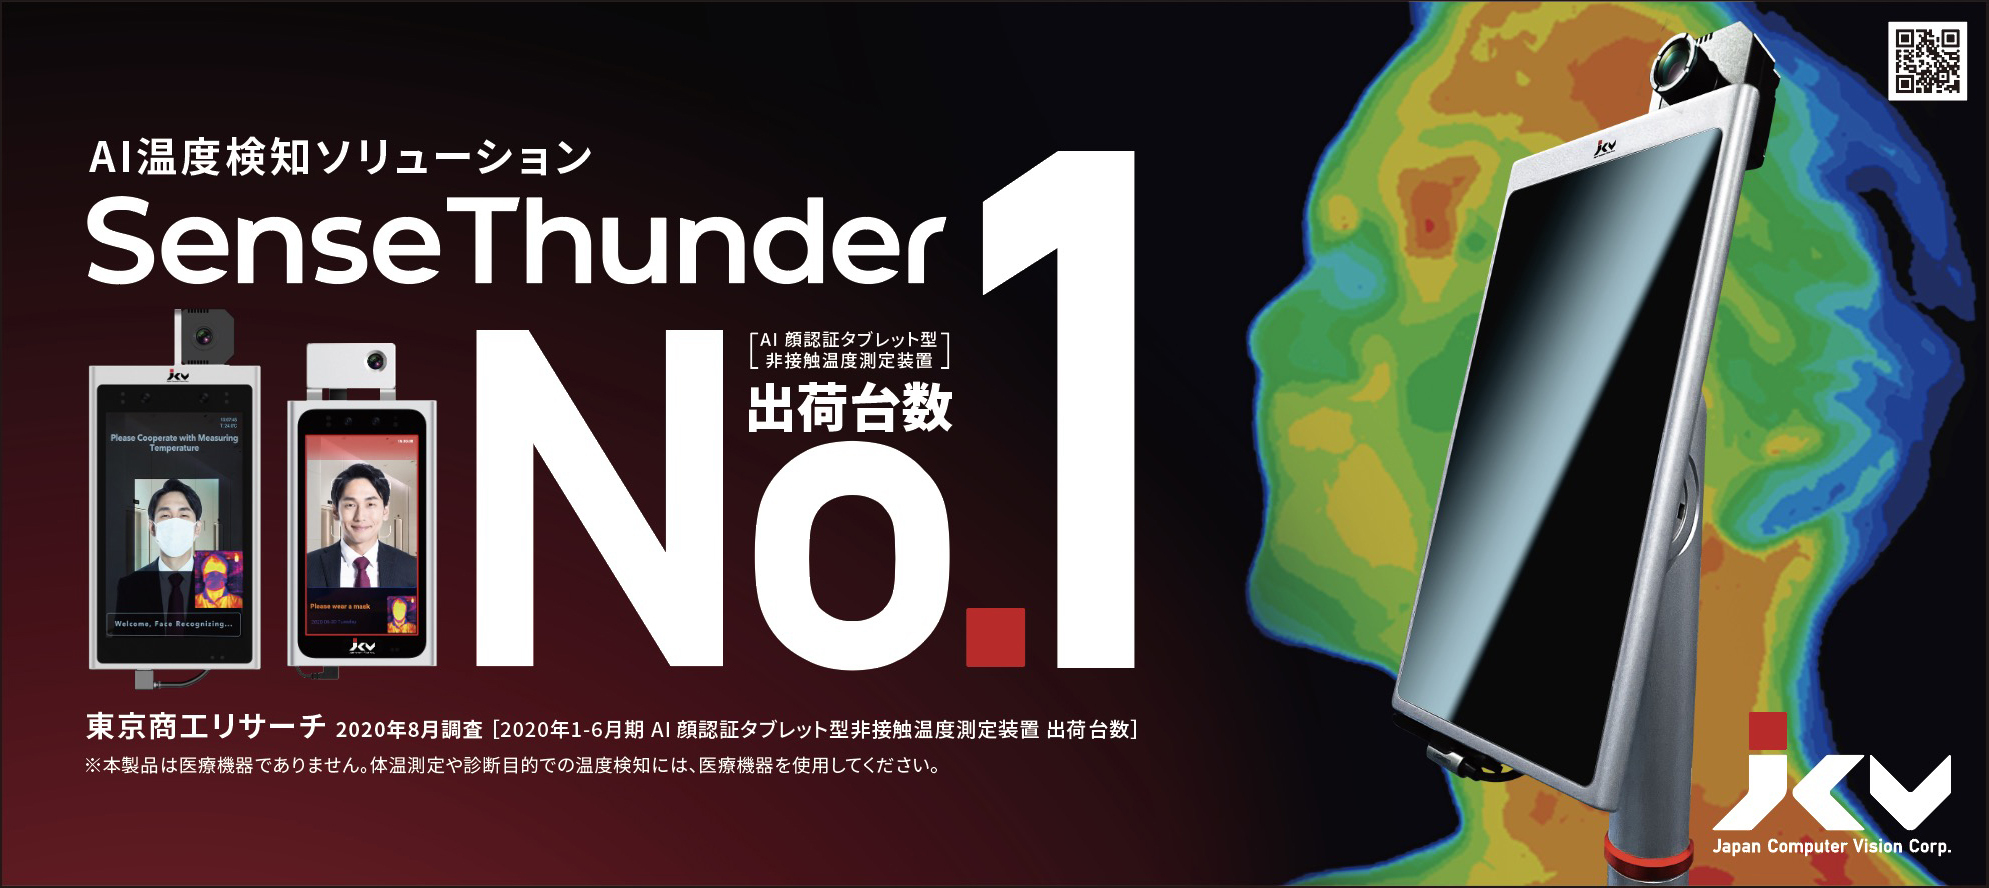 日本コンピュータビジョン Jcv Ai 顔認証タブレット型非接触温度測定装置 出荷台数でno 1を獲得 日本コンピュータビジョン株式会社のプレスリリース